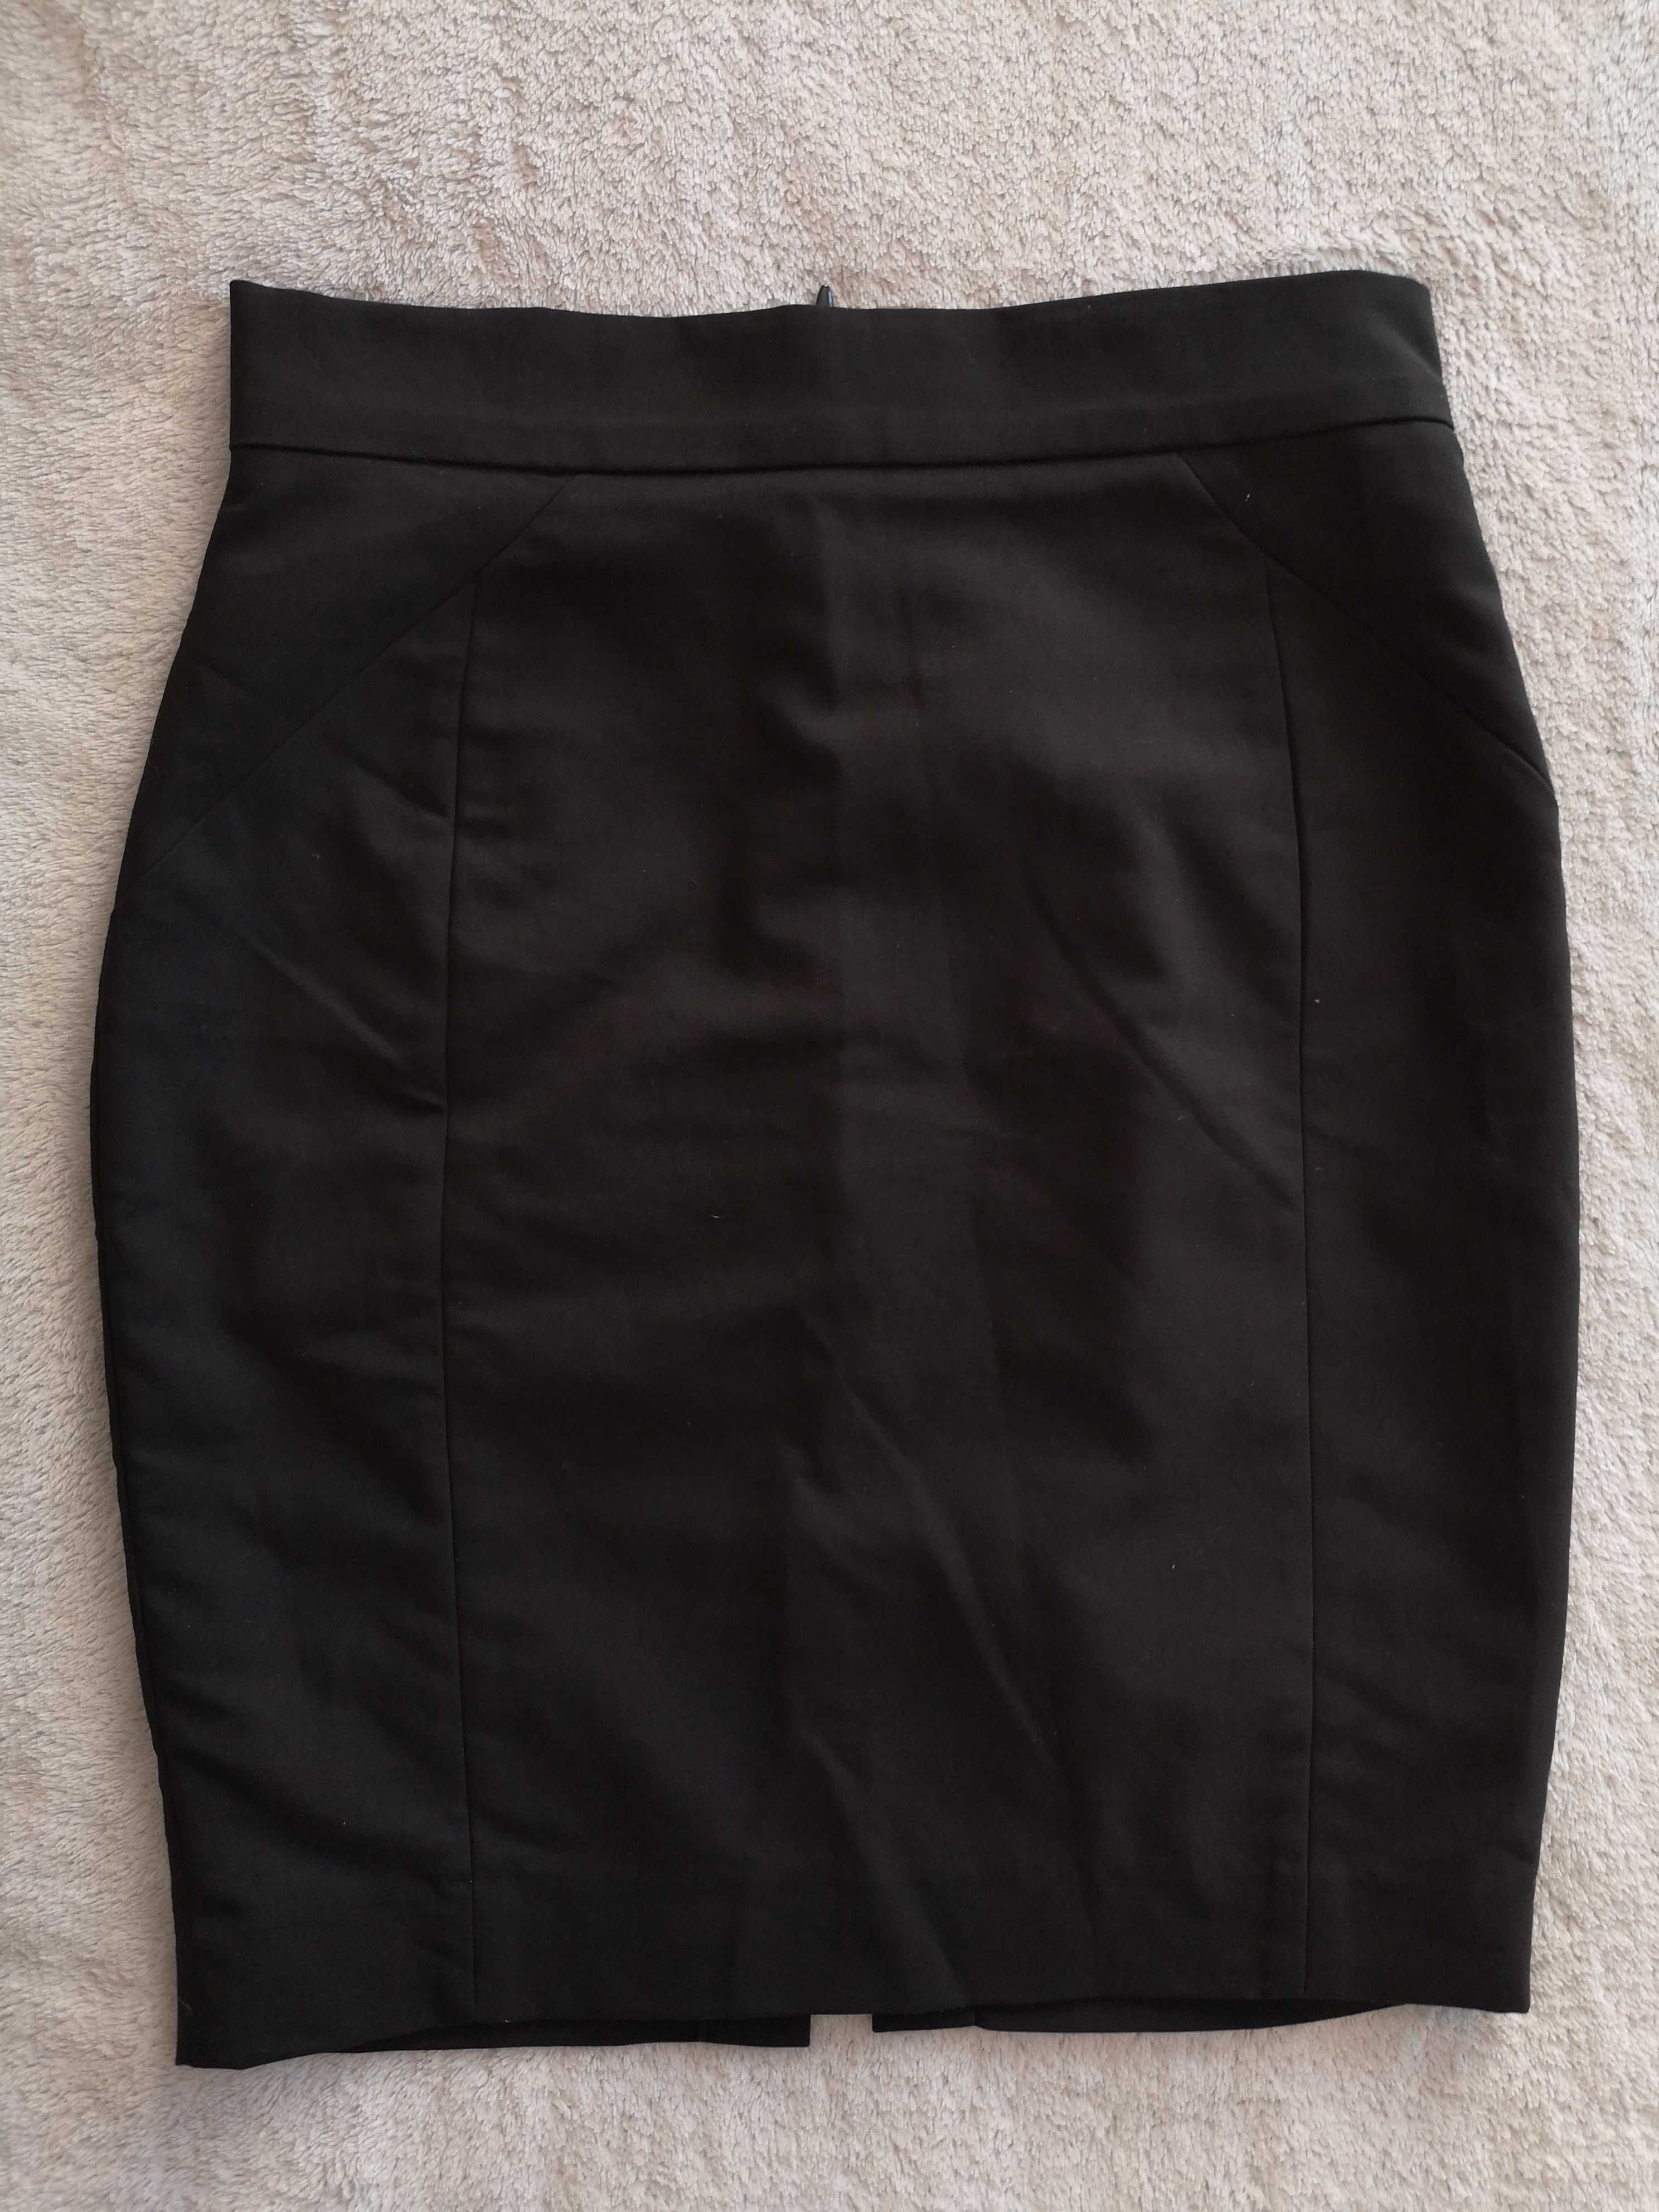 Elegancka czarna ołówkowa spódnica H&M 36 jak nowa